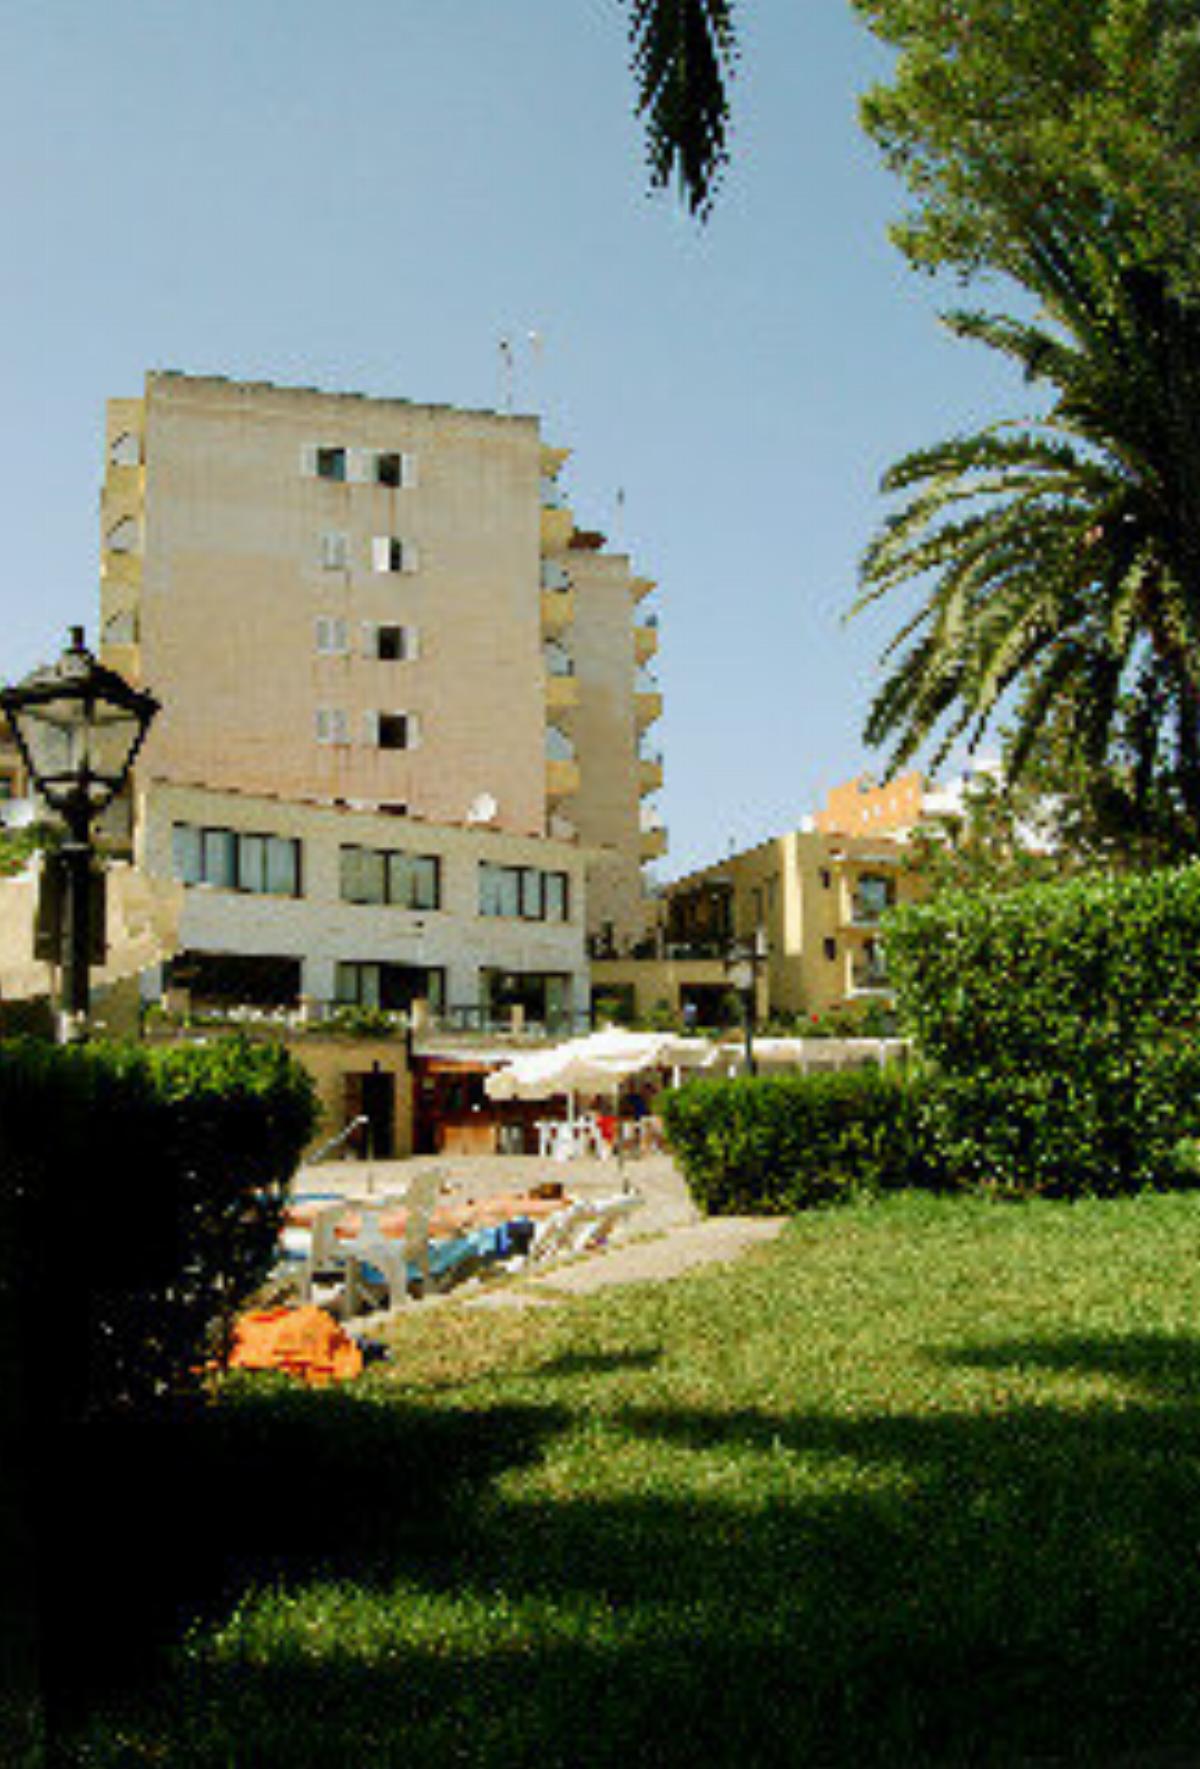 Amazonas Hotel Majorca Spain